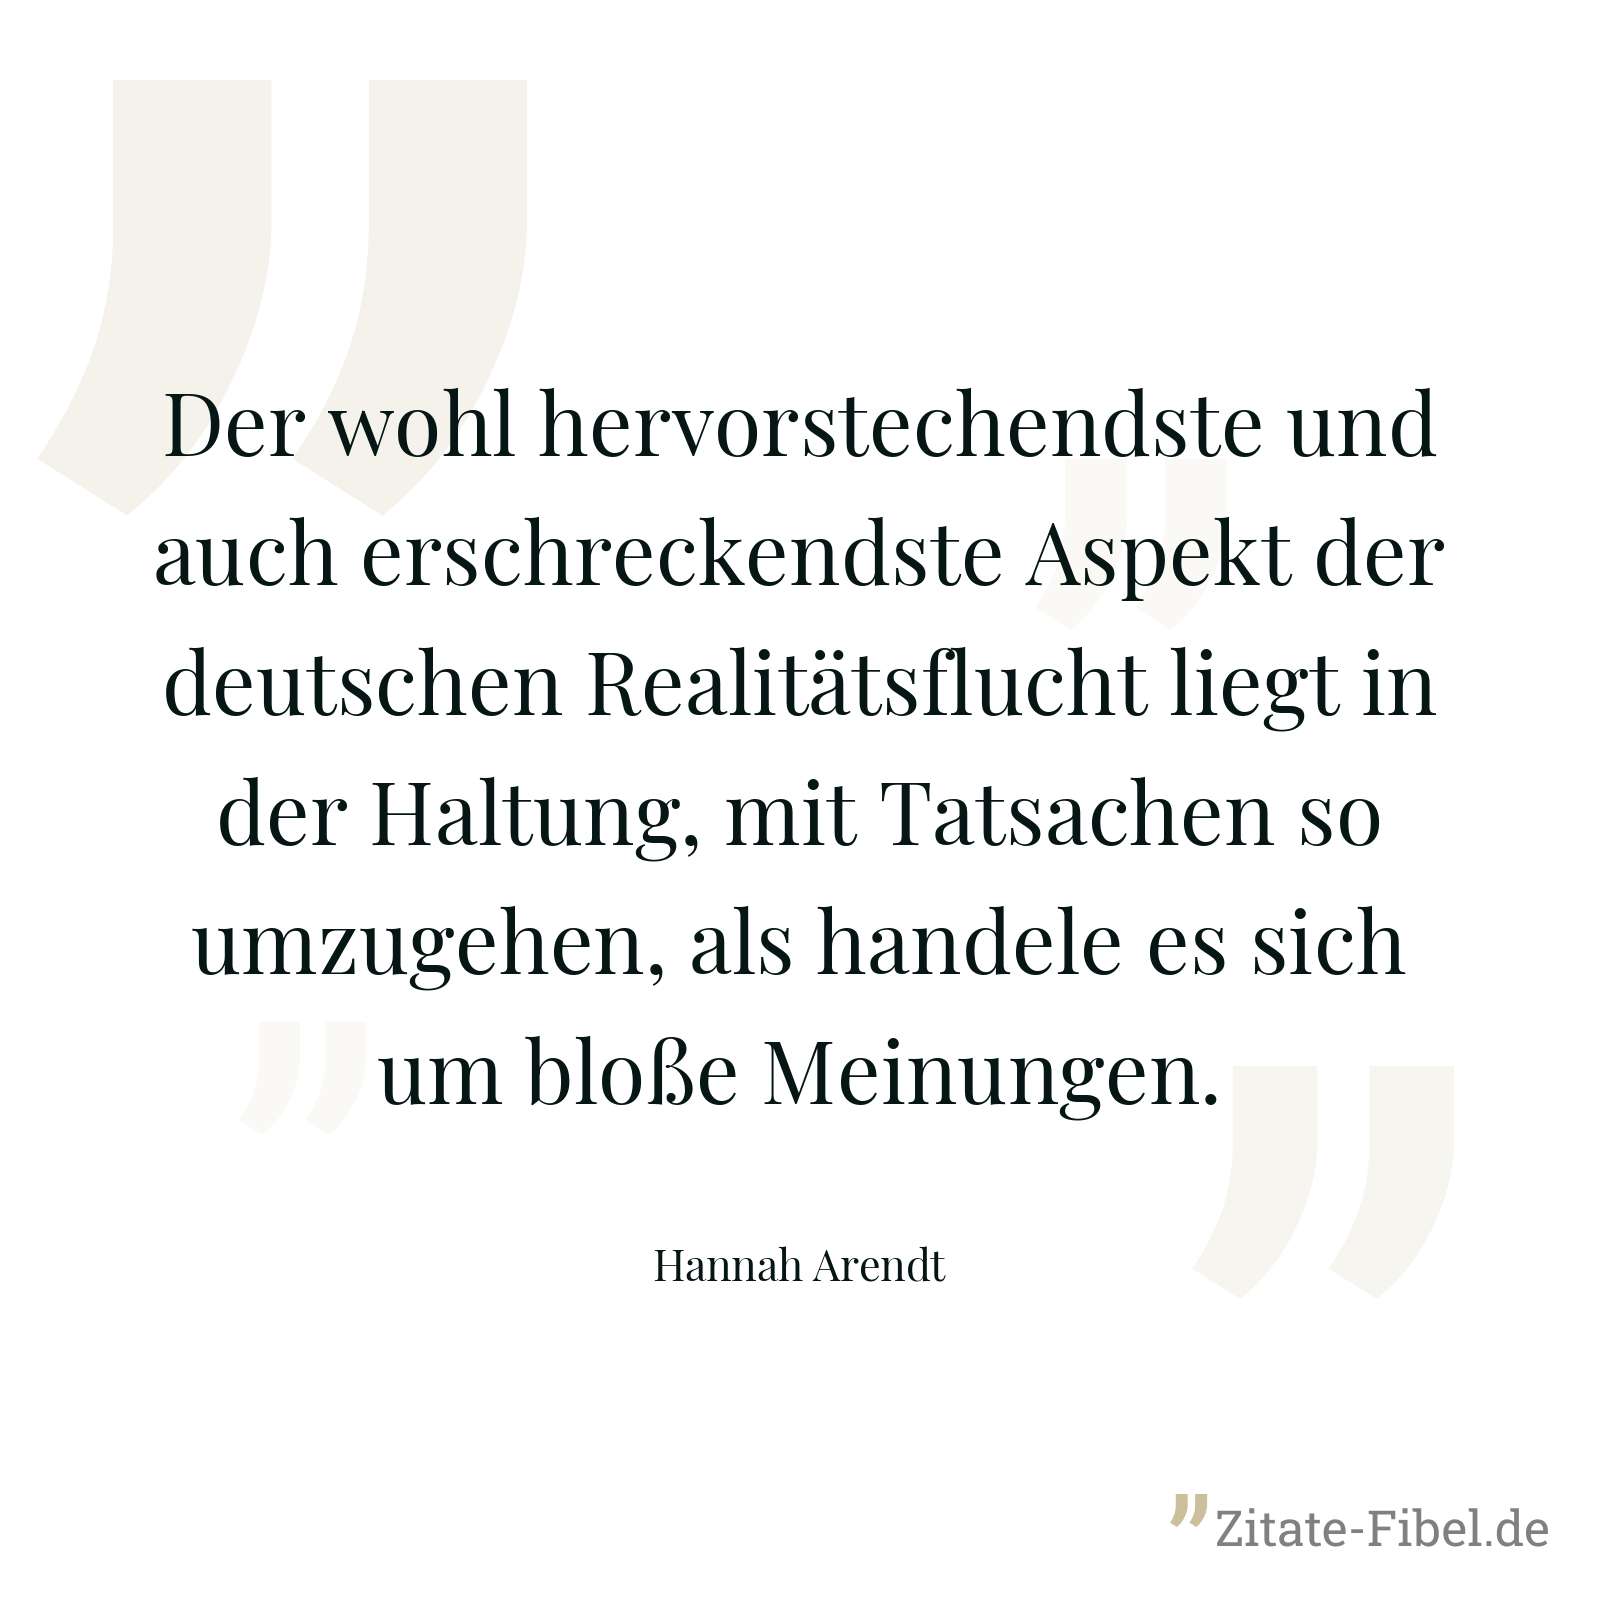 Der wohl hervorstechendste und auch erschreckendste Aspekt der deutschen Realitätsflucht liegt in der Haltung, mit Tatsachen so umzugehen, als handele es sich um bloße Meinungen. - Hannah Arendt